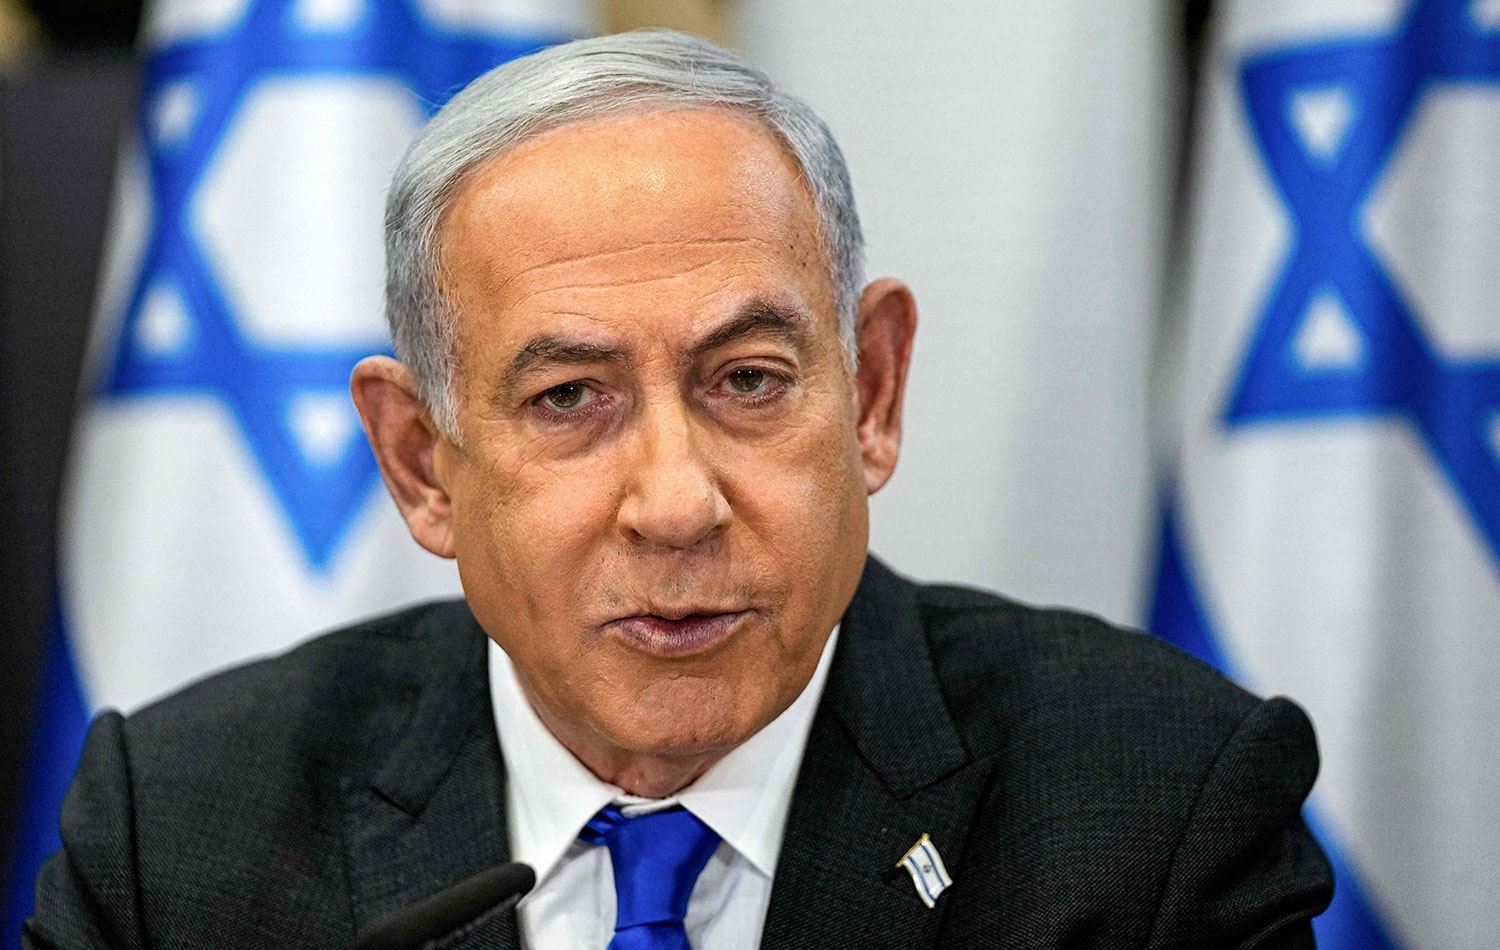 Netanyahu: 14 askerimiz öldü ama savaş dışında... | Rudaw.net